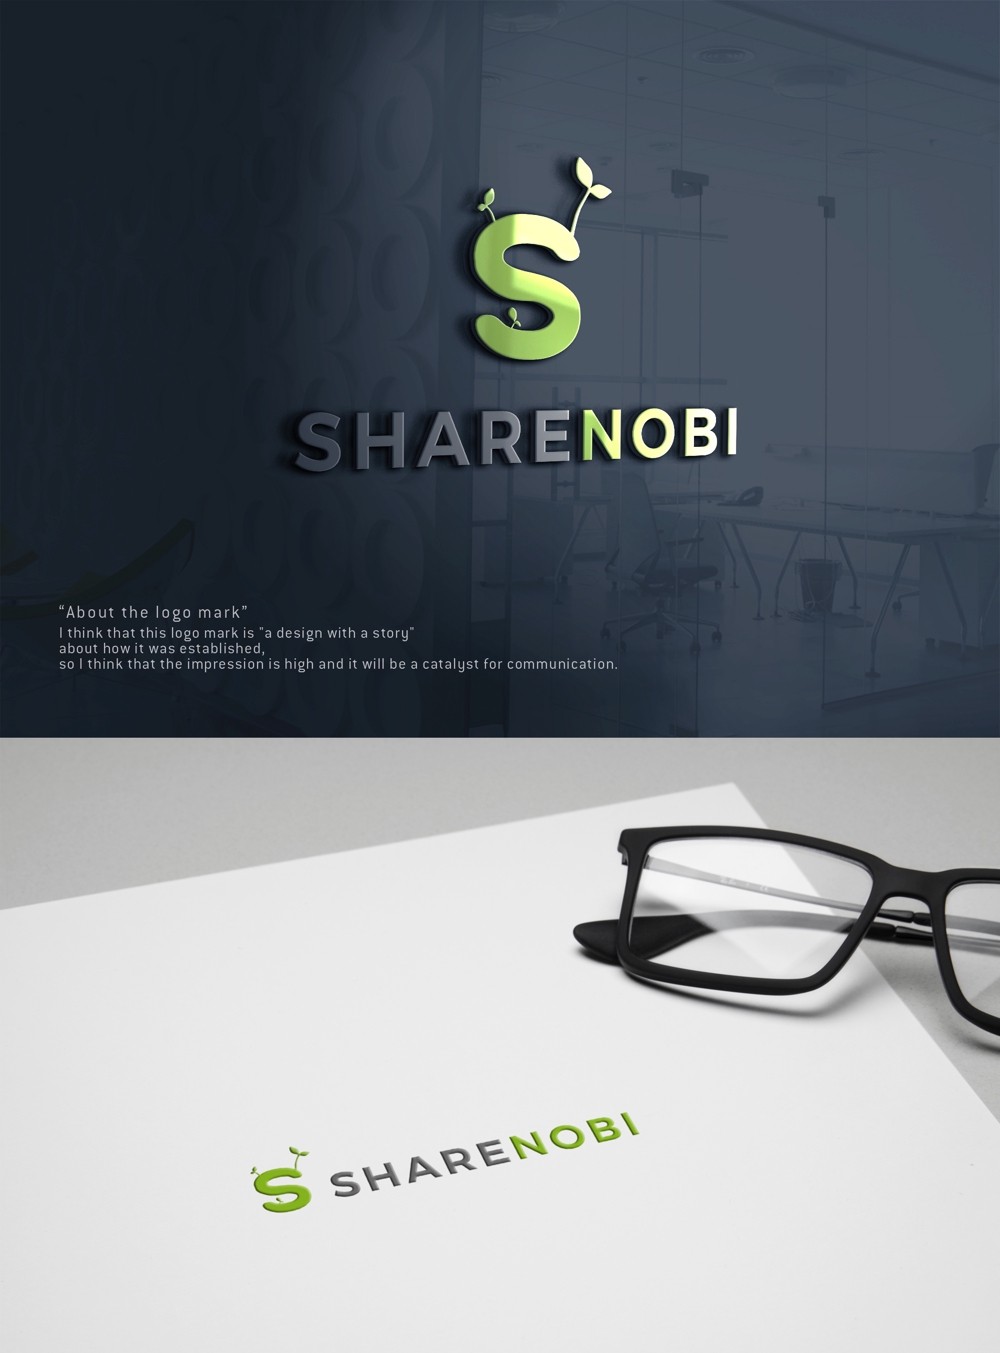 シェアオフィス（店舗名：SHARENOBI（読み：シェアノビ））のロゴ